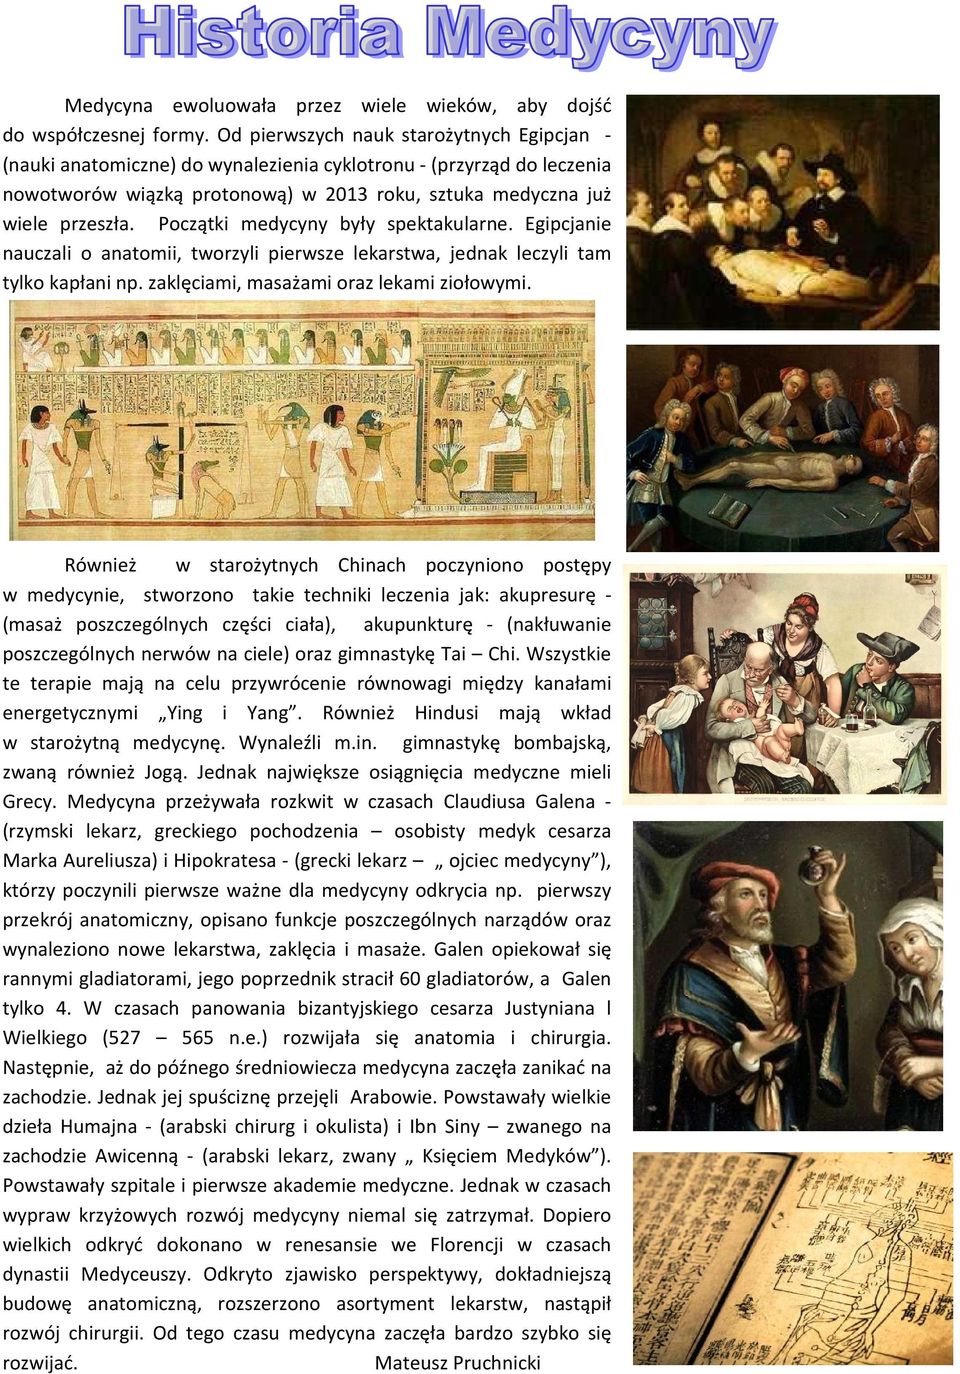 Początki medycyny były spektakularne. Egipcjanie nauczali o anatomii, tworzyli pierwsze lekarstwa, jednak leczyli tam tylko kapłani np. zaklęciami, masażami oraz lekami ziołowymi.